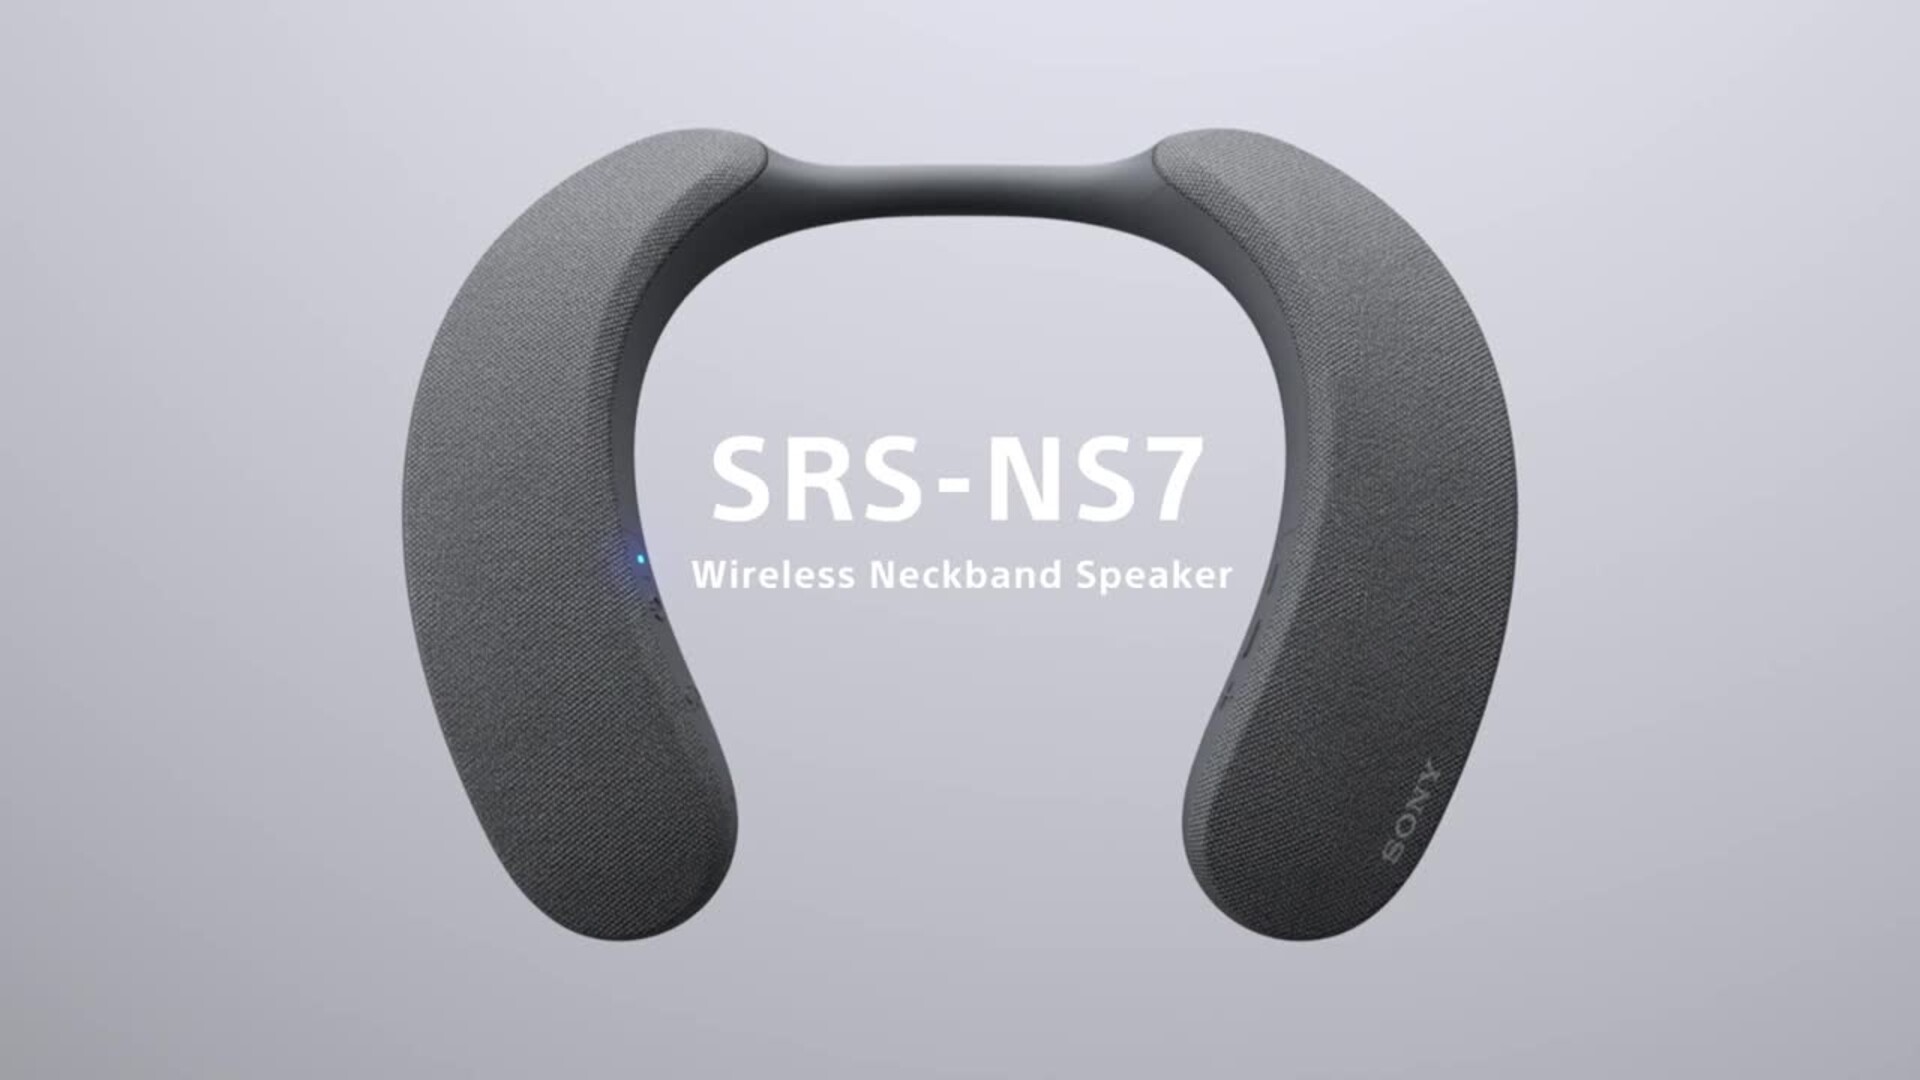 Sony SRSNS7 Wireless Neckband Speaker Black SRSNS7 - Best Buy